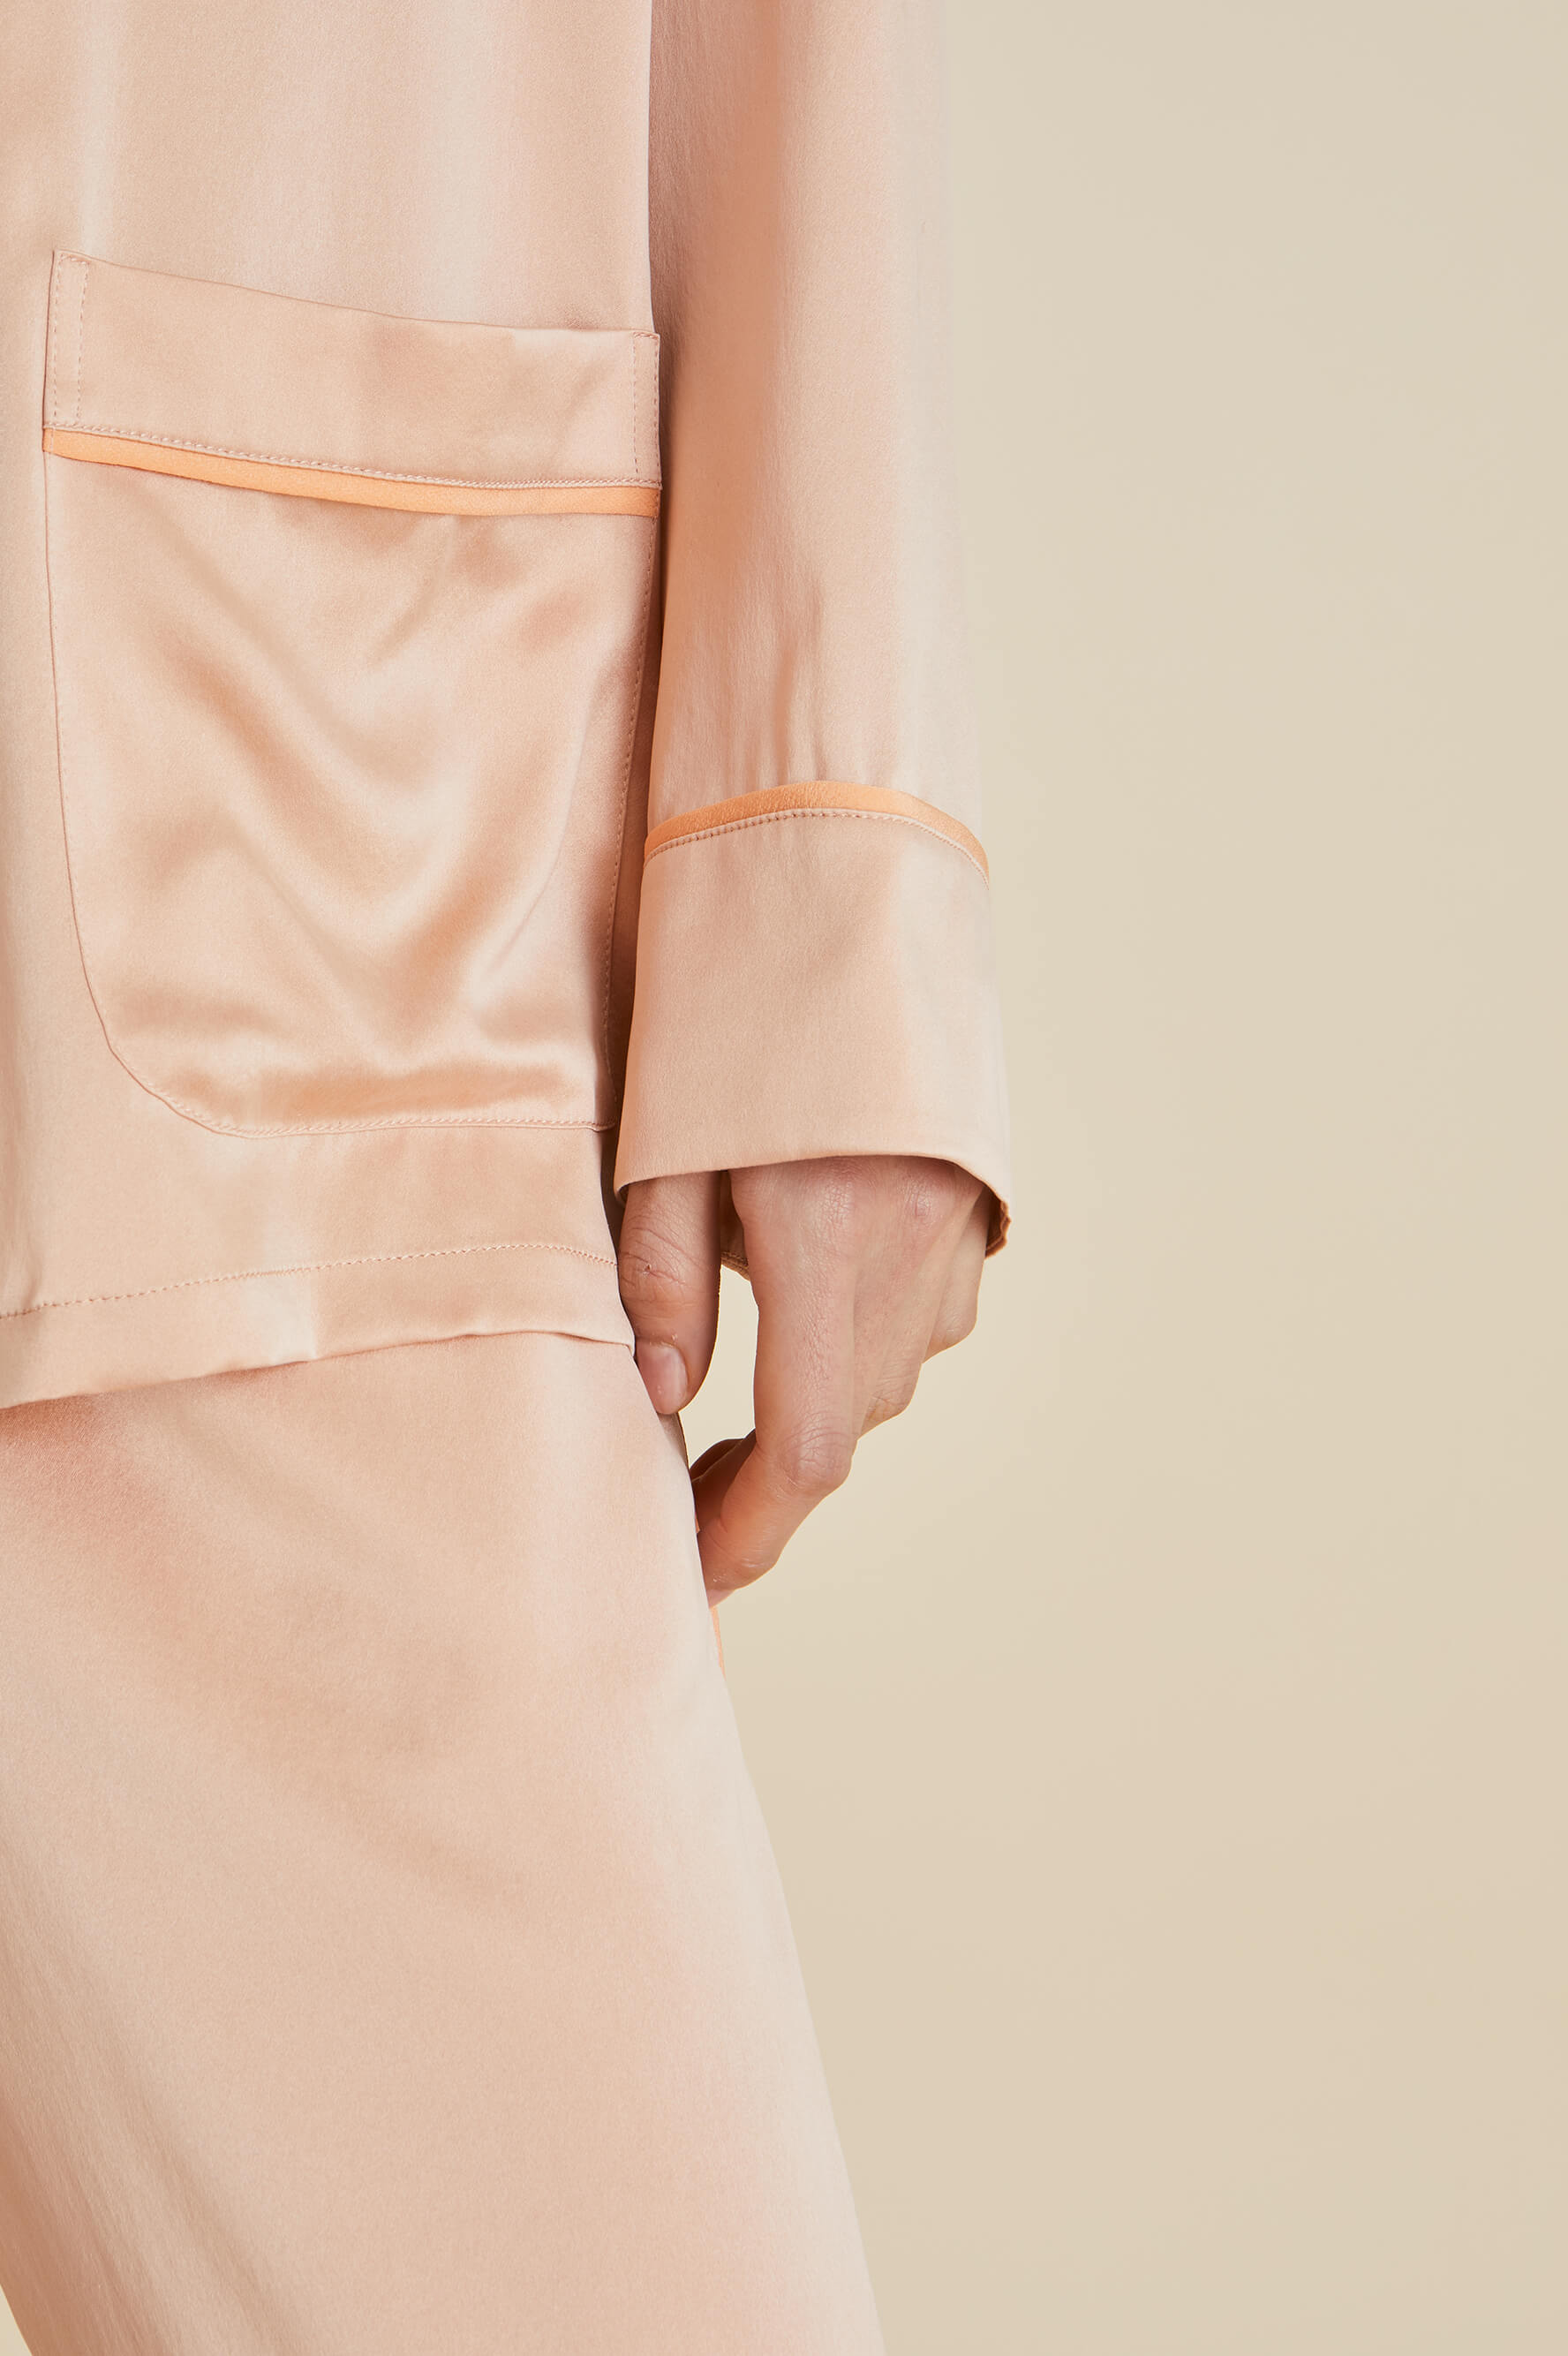 Yves Shell Pink Sandwashed Silk Pajamas